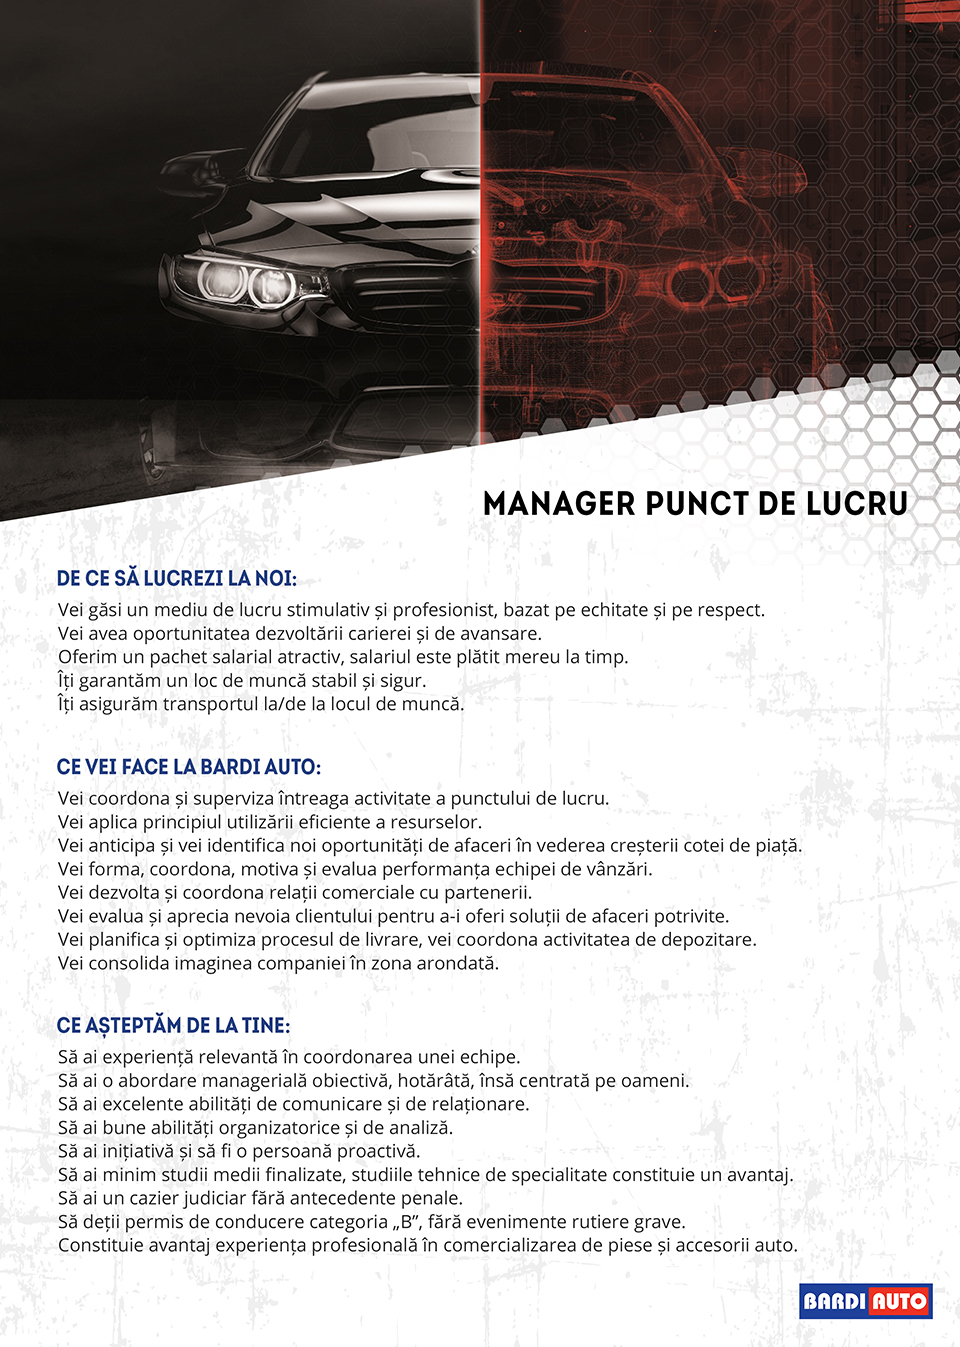 Manager punct de lucru (Automotive Area)